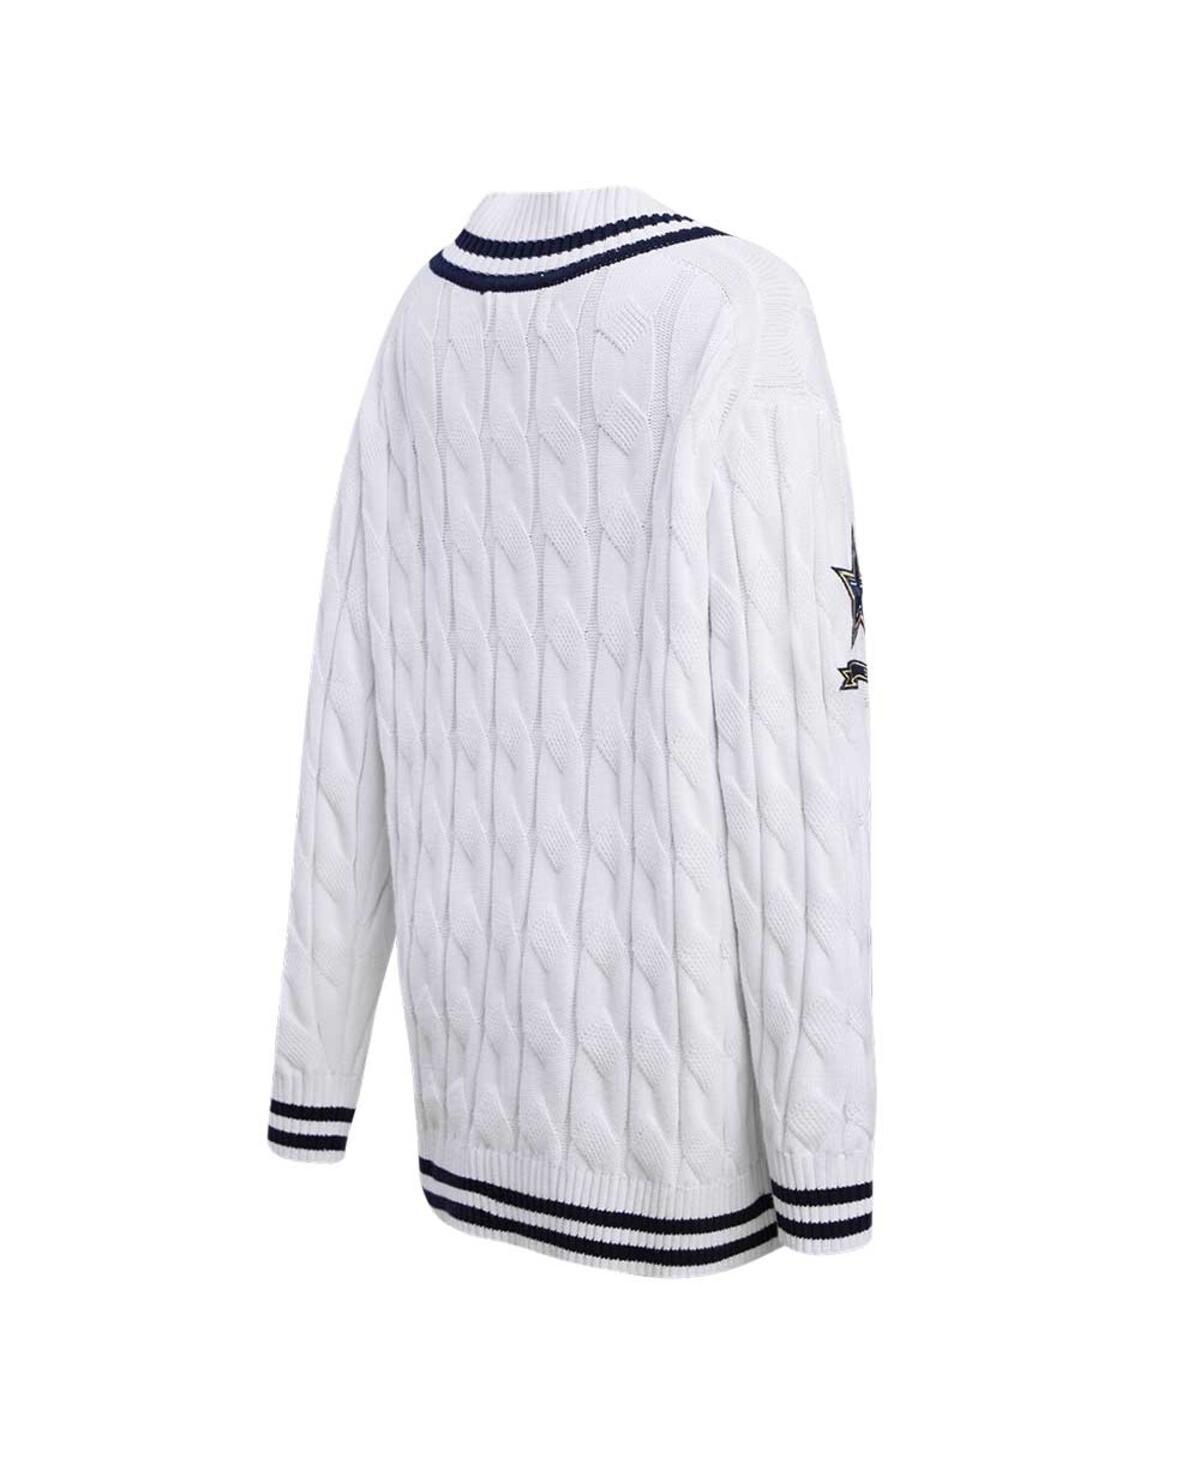 Shop Pro Standard Women's  White Dallas Cowboys Prep V-neck Pullover Sweater